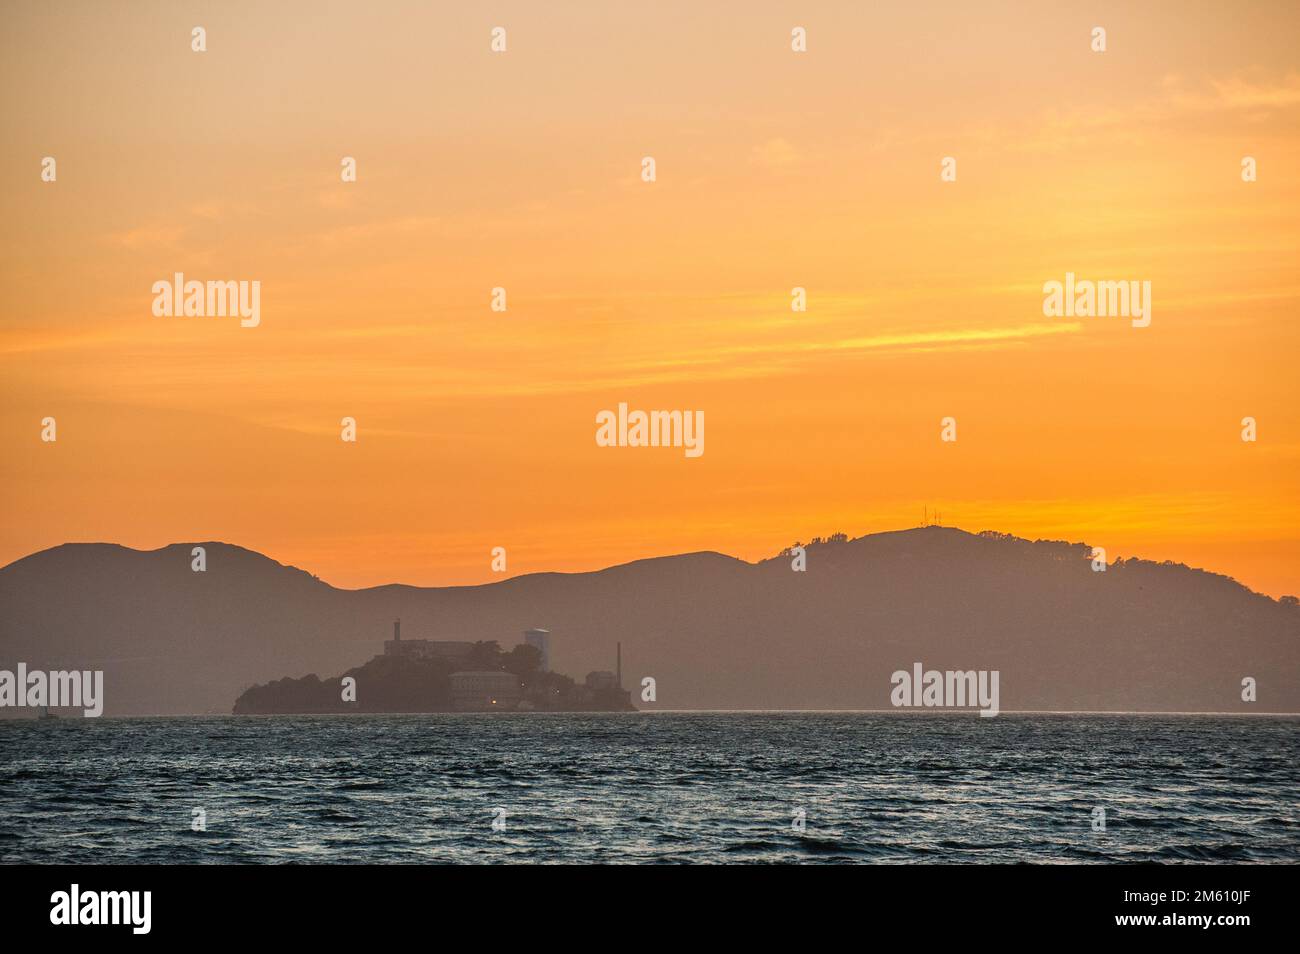 View of San Francisco Bay and Alcatraz Island at dusk from Treasure Island Stock Photo